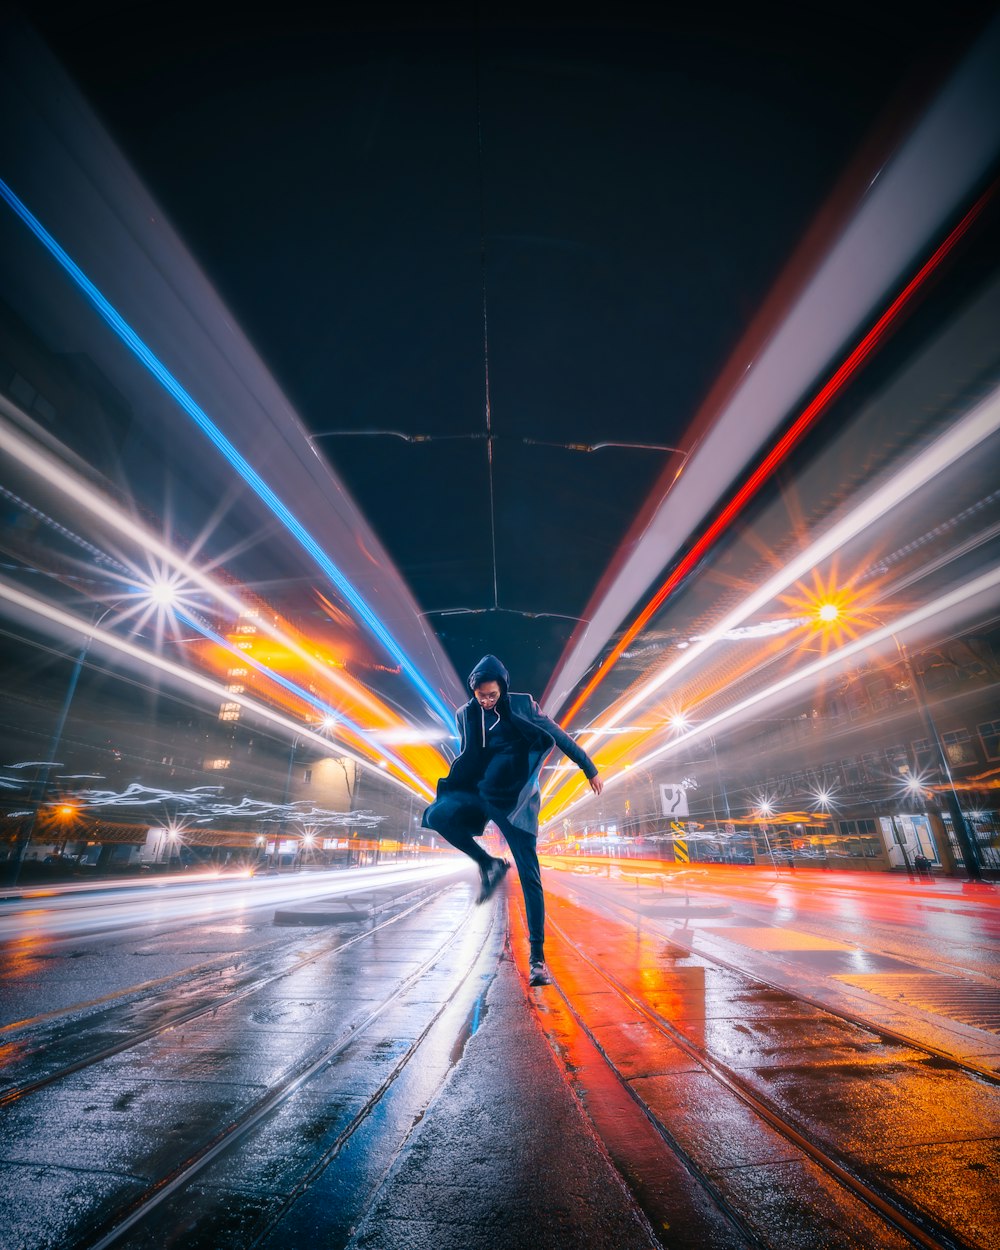 Zeitrafferfoto eines Mannes, der auf die Straße springt